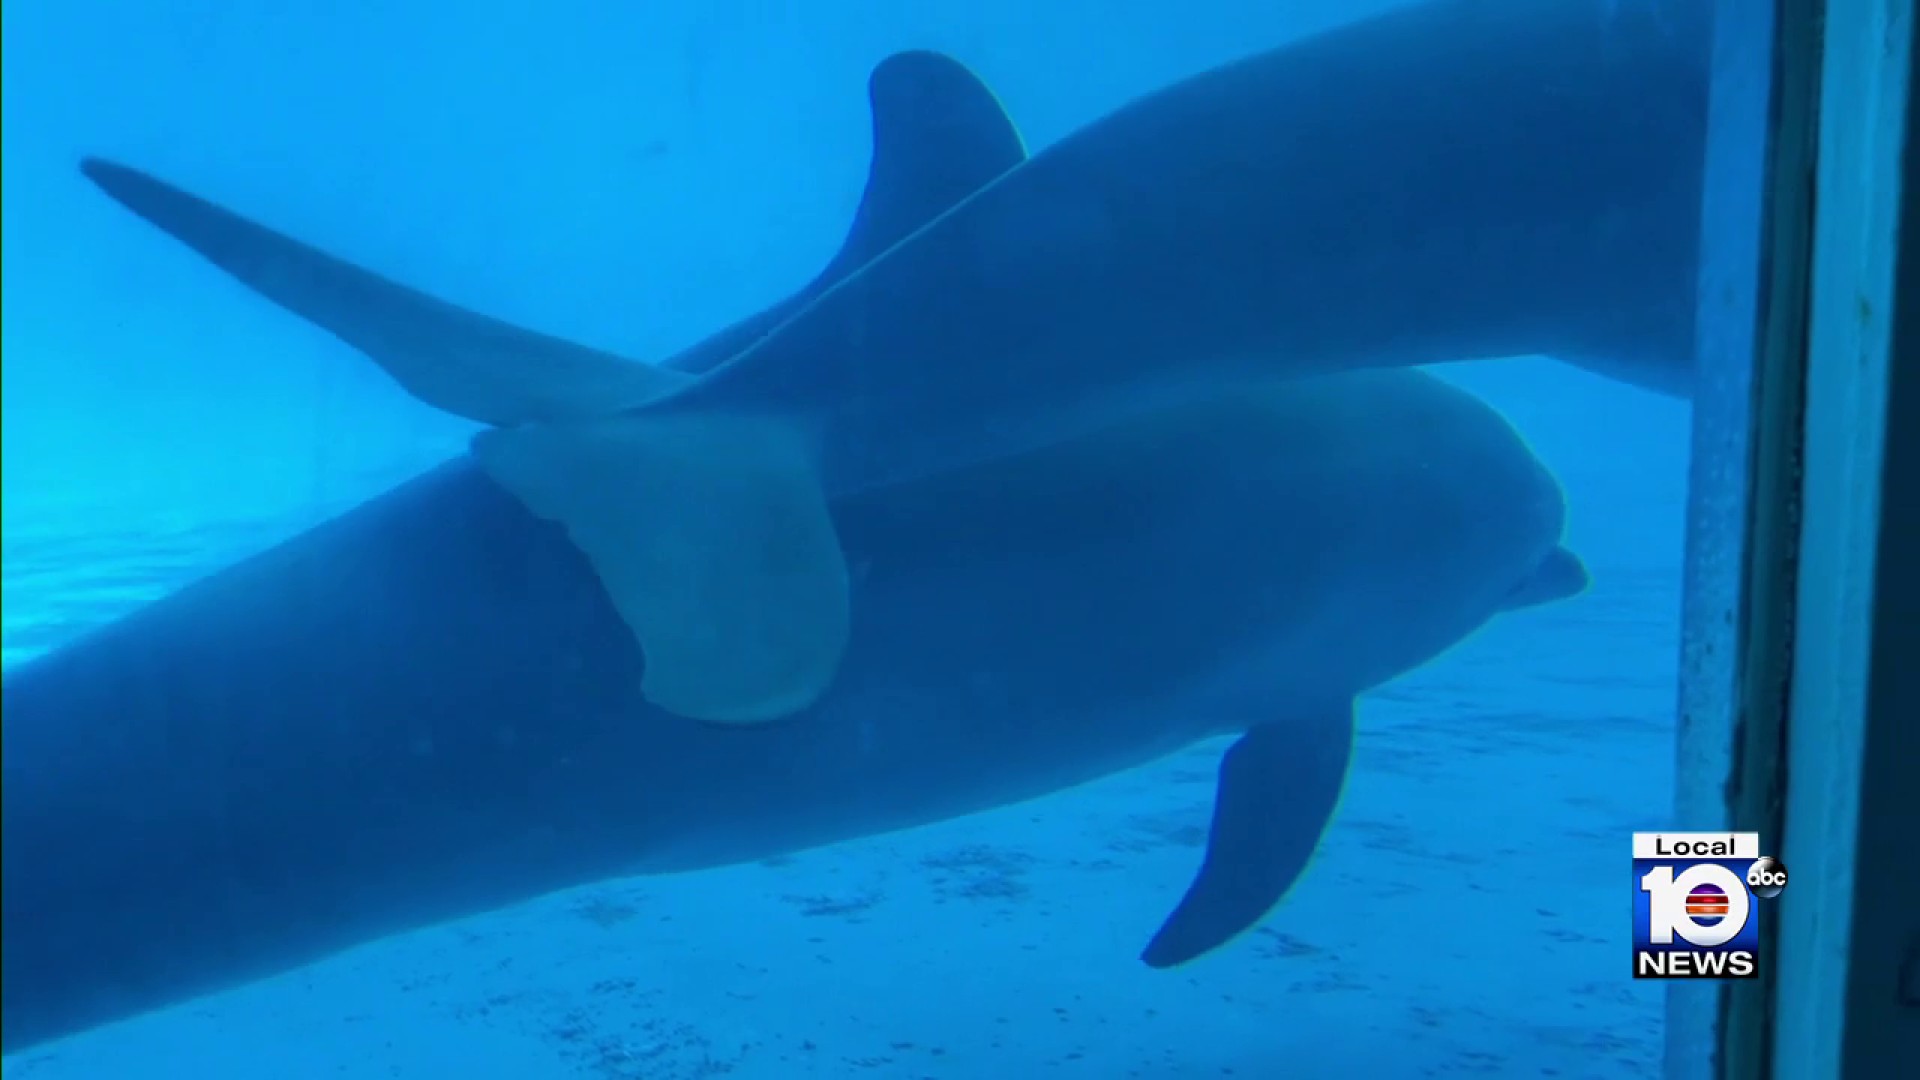 Dolphins at Miami Seaquarium became more aggressive after 'abrupt' diet  cuts, federal inspectors find